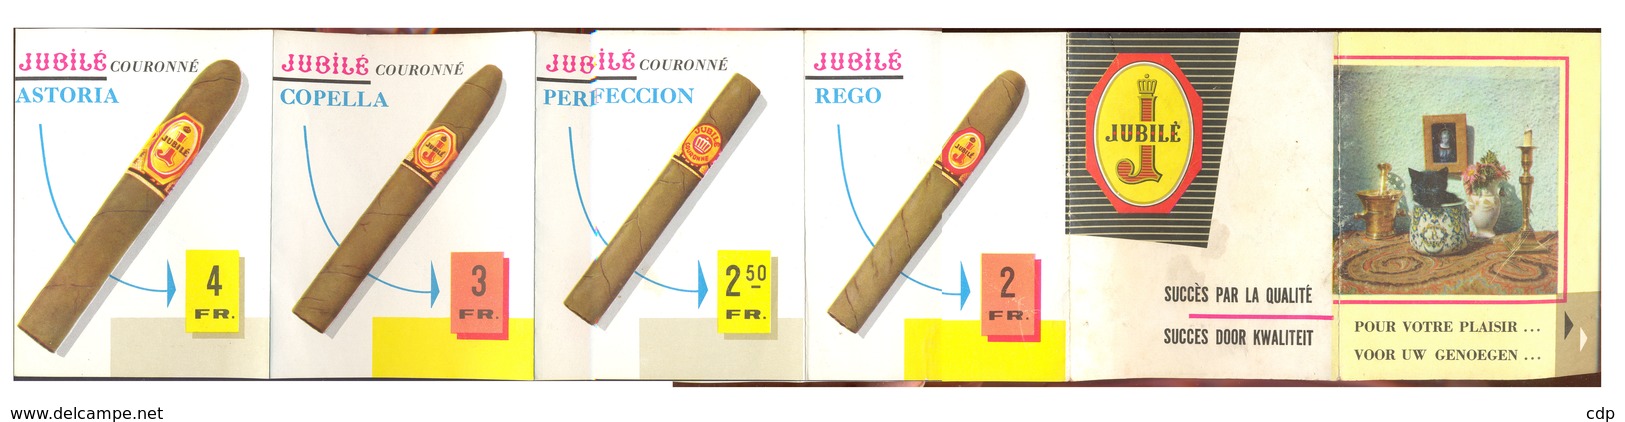 TABAC  Publicité   Cigarillos Jubilé   1960 - Objets Publicitaires